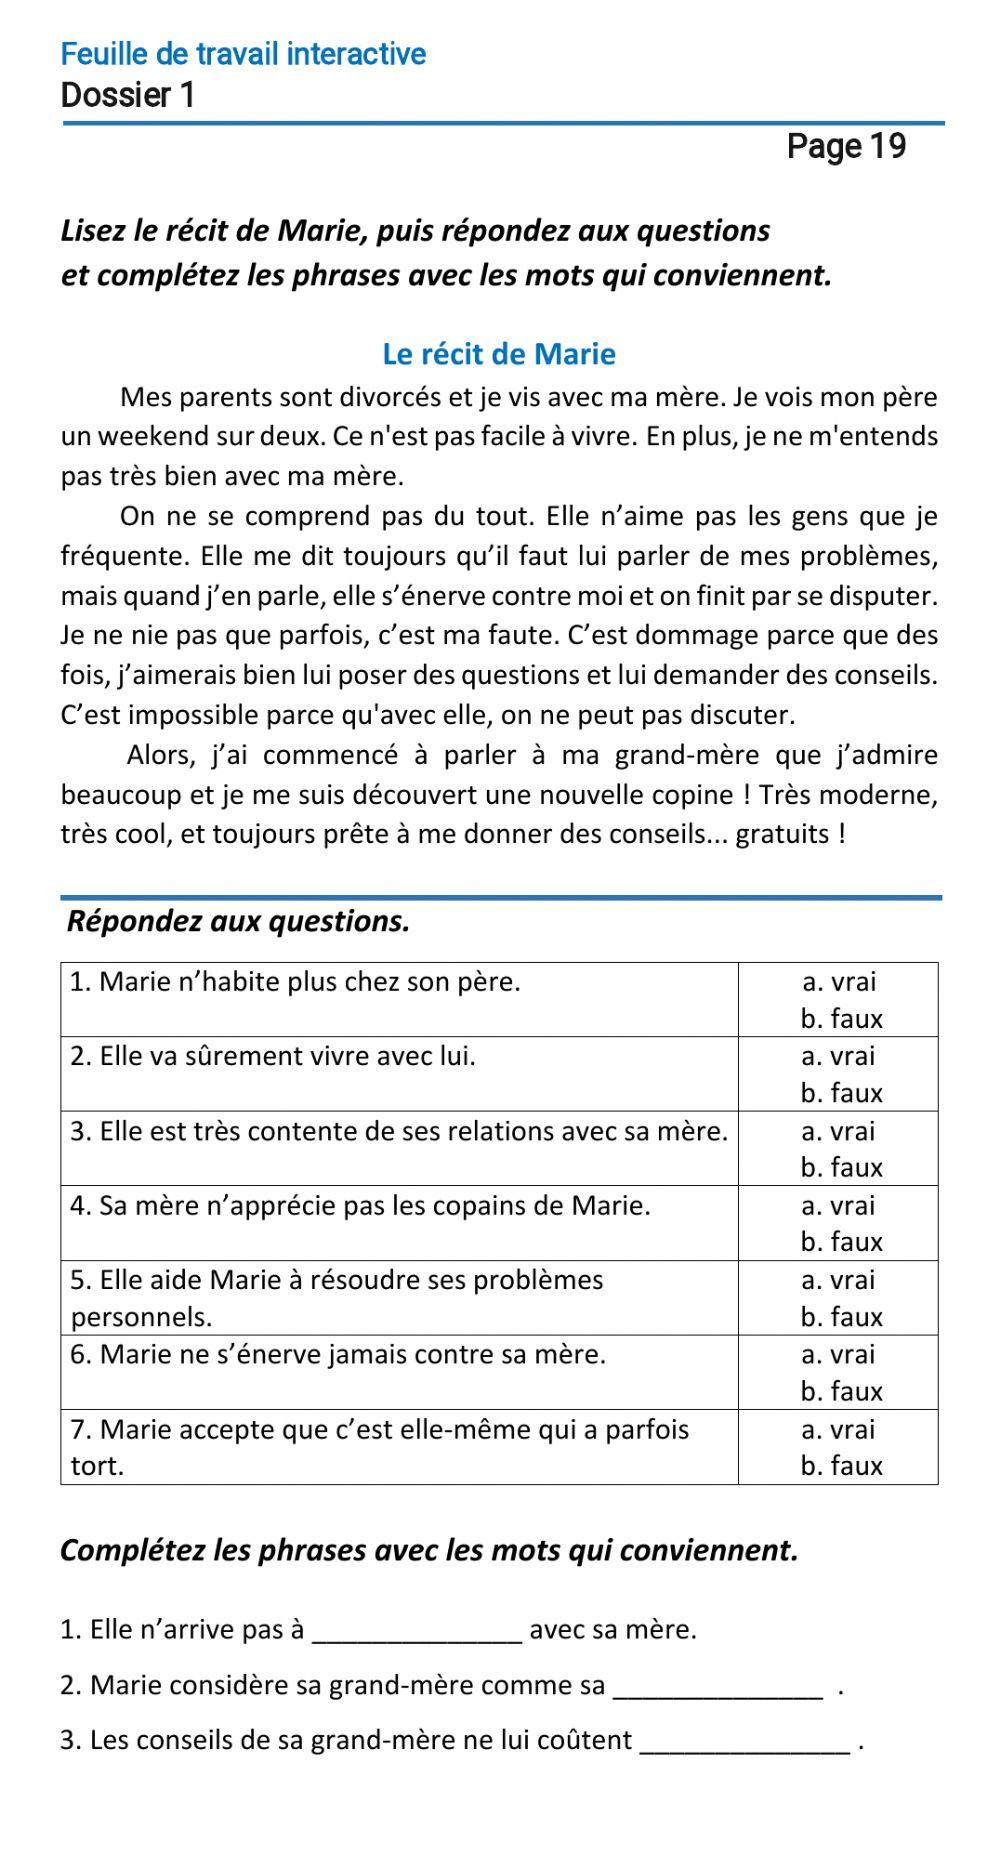 Le français-9 (повыш.)-Dossier 1-Page 19